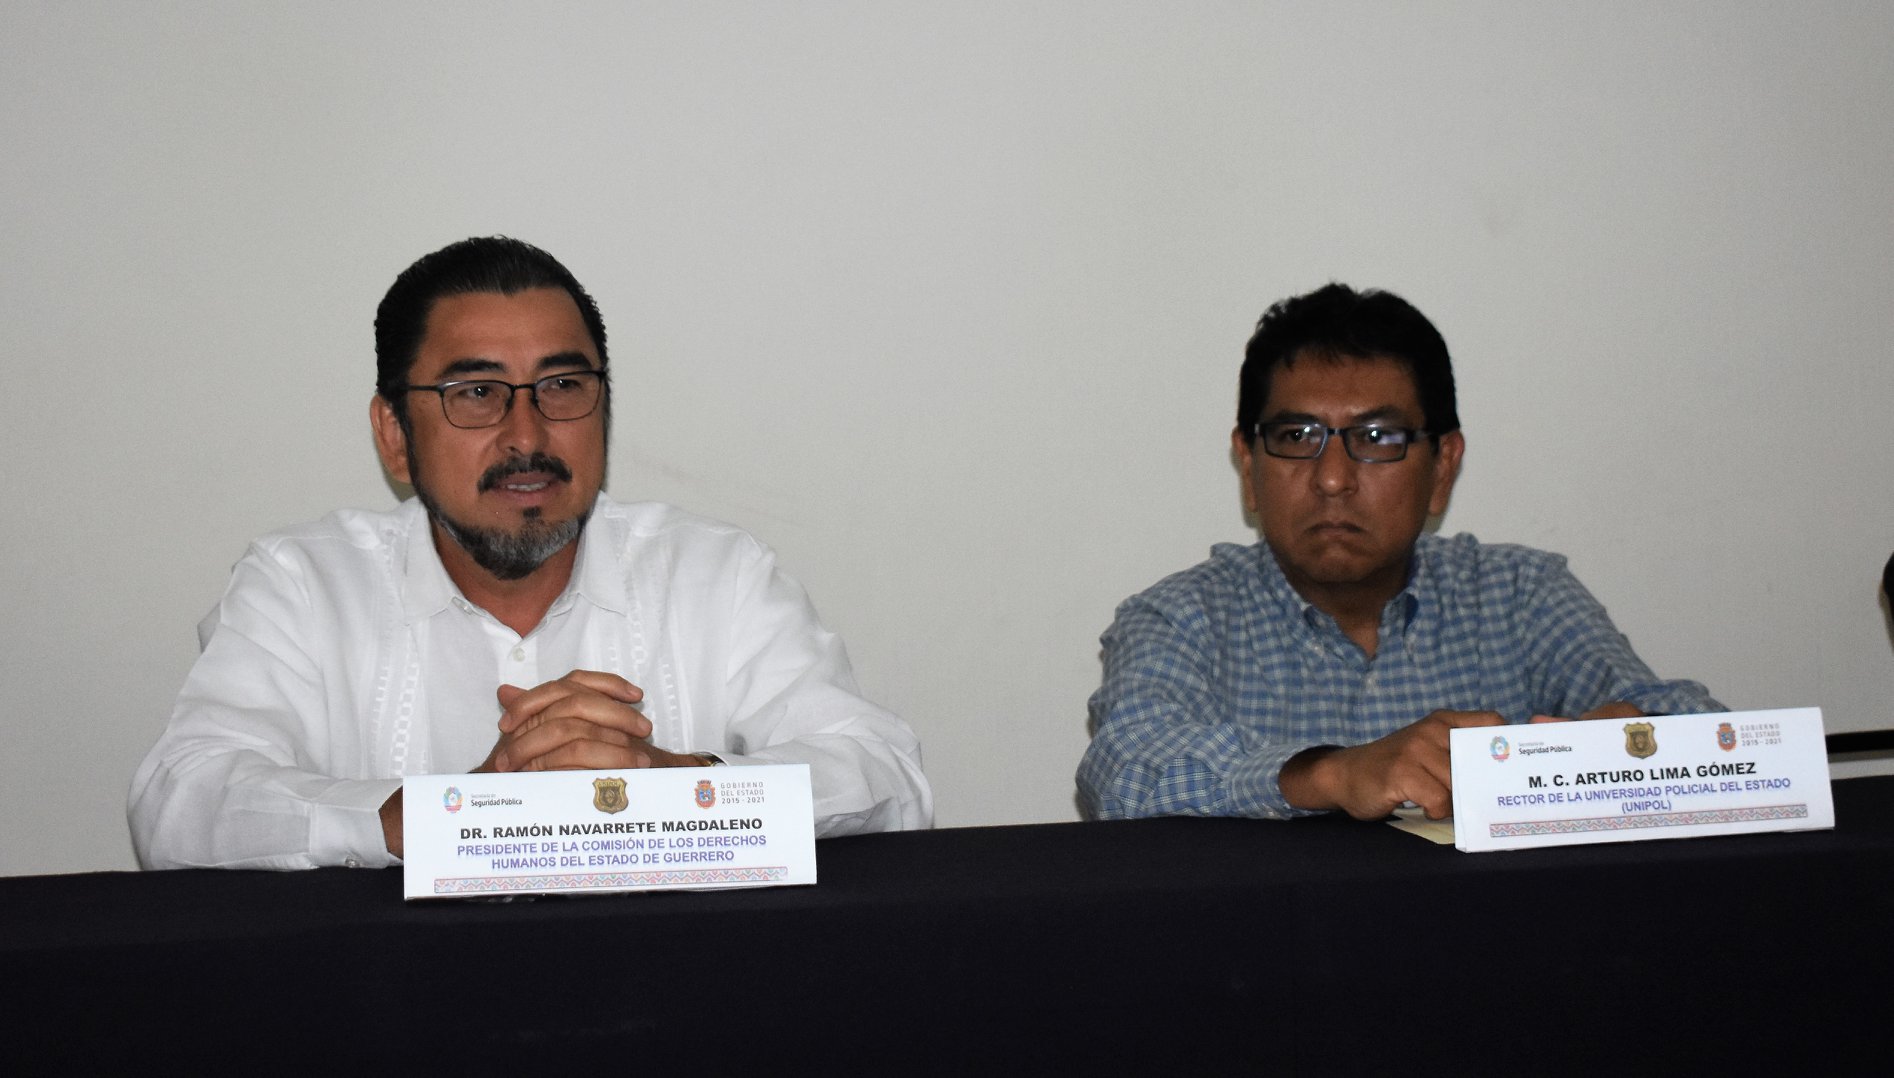 Arturo Lima Gómez: Una carrera dedicada a la seguridad pública